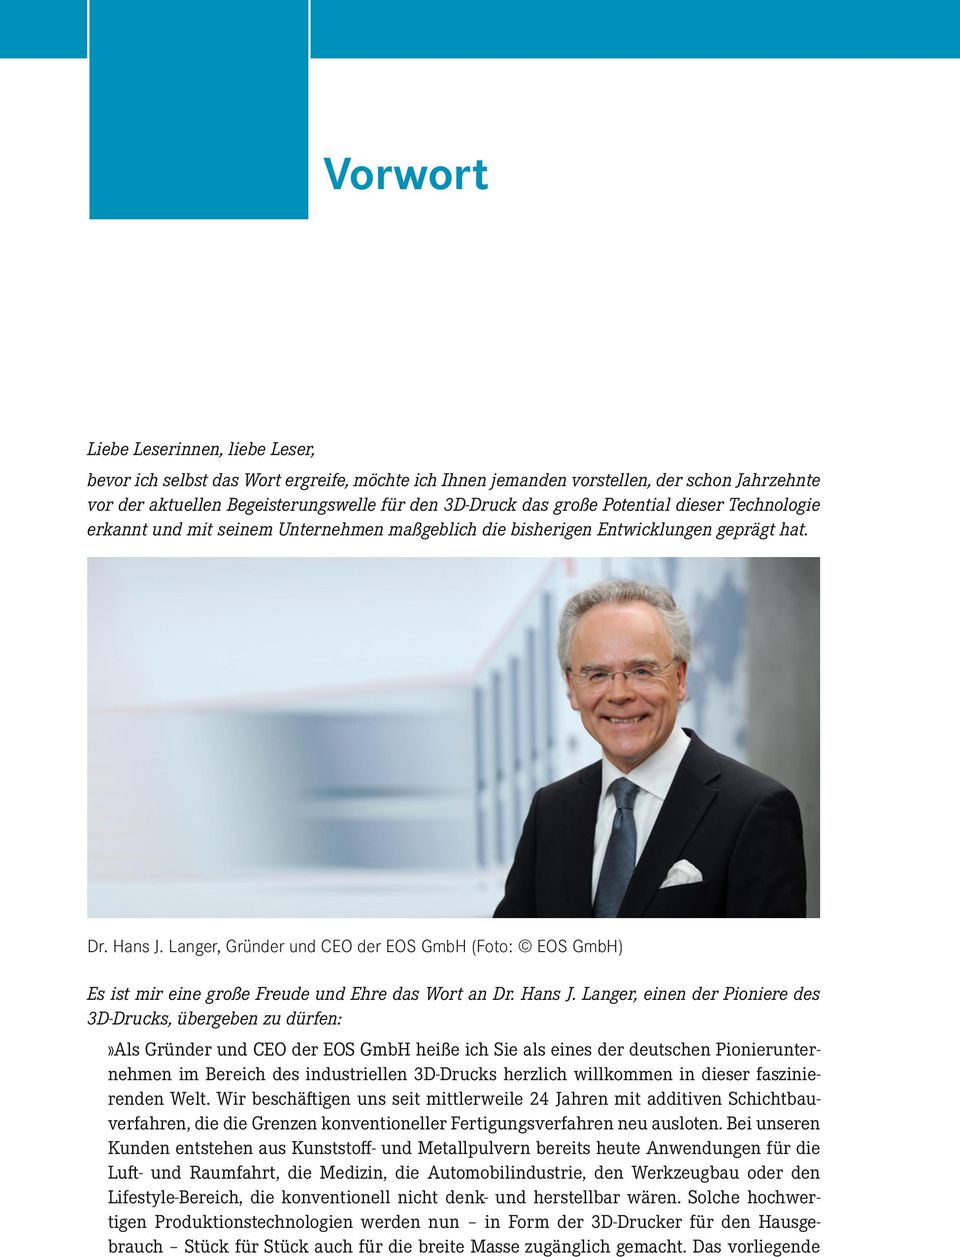 Langer, Gründer und CEO der EOS GmbH (Foto: EOS GmbH) Es ist mir eine große Freude und Ehre das Wort an Dr. Hans J.